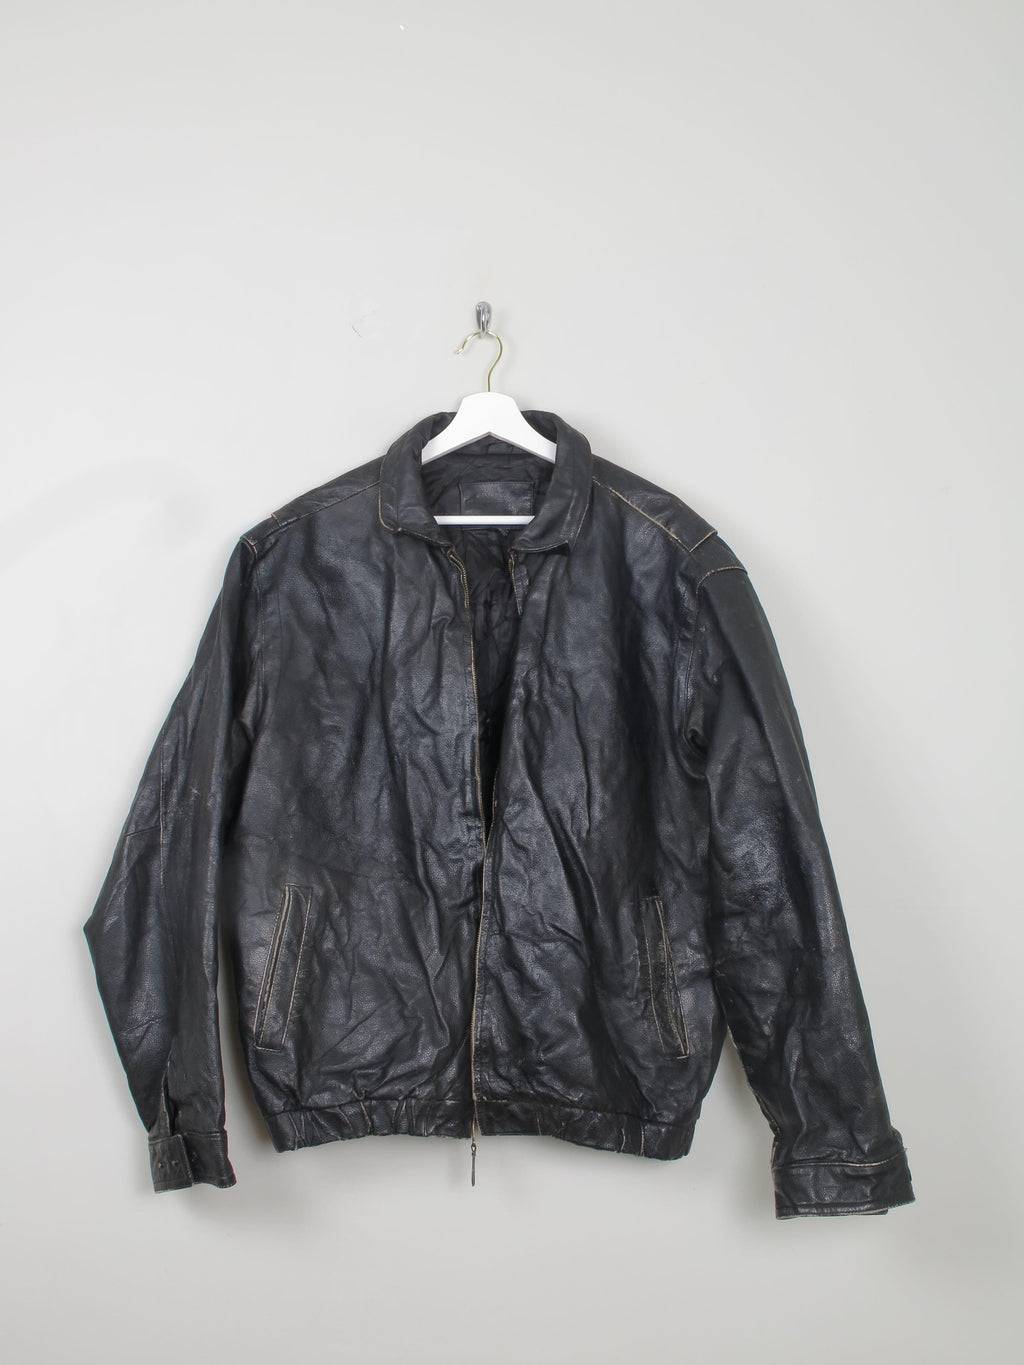 Men's Vintage Black Leather Bomber Jacket Distressed M/L - The Harlequin